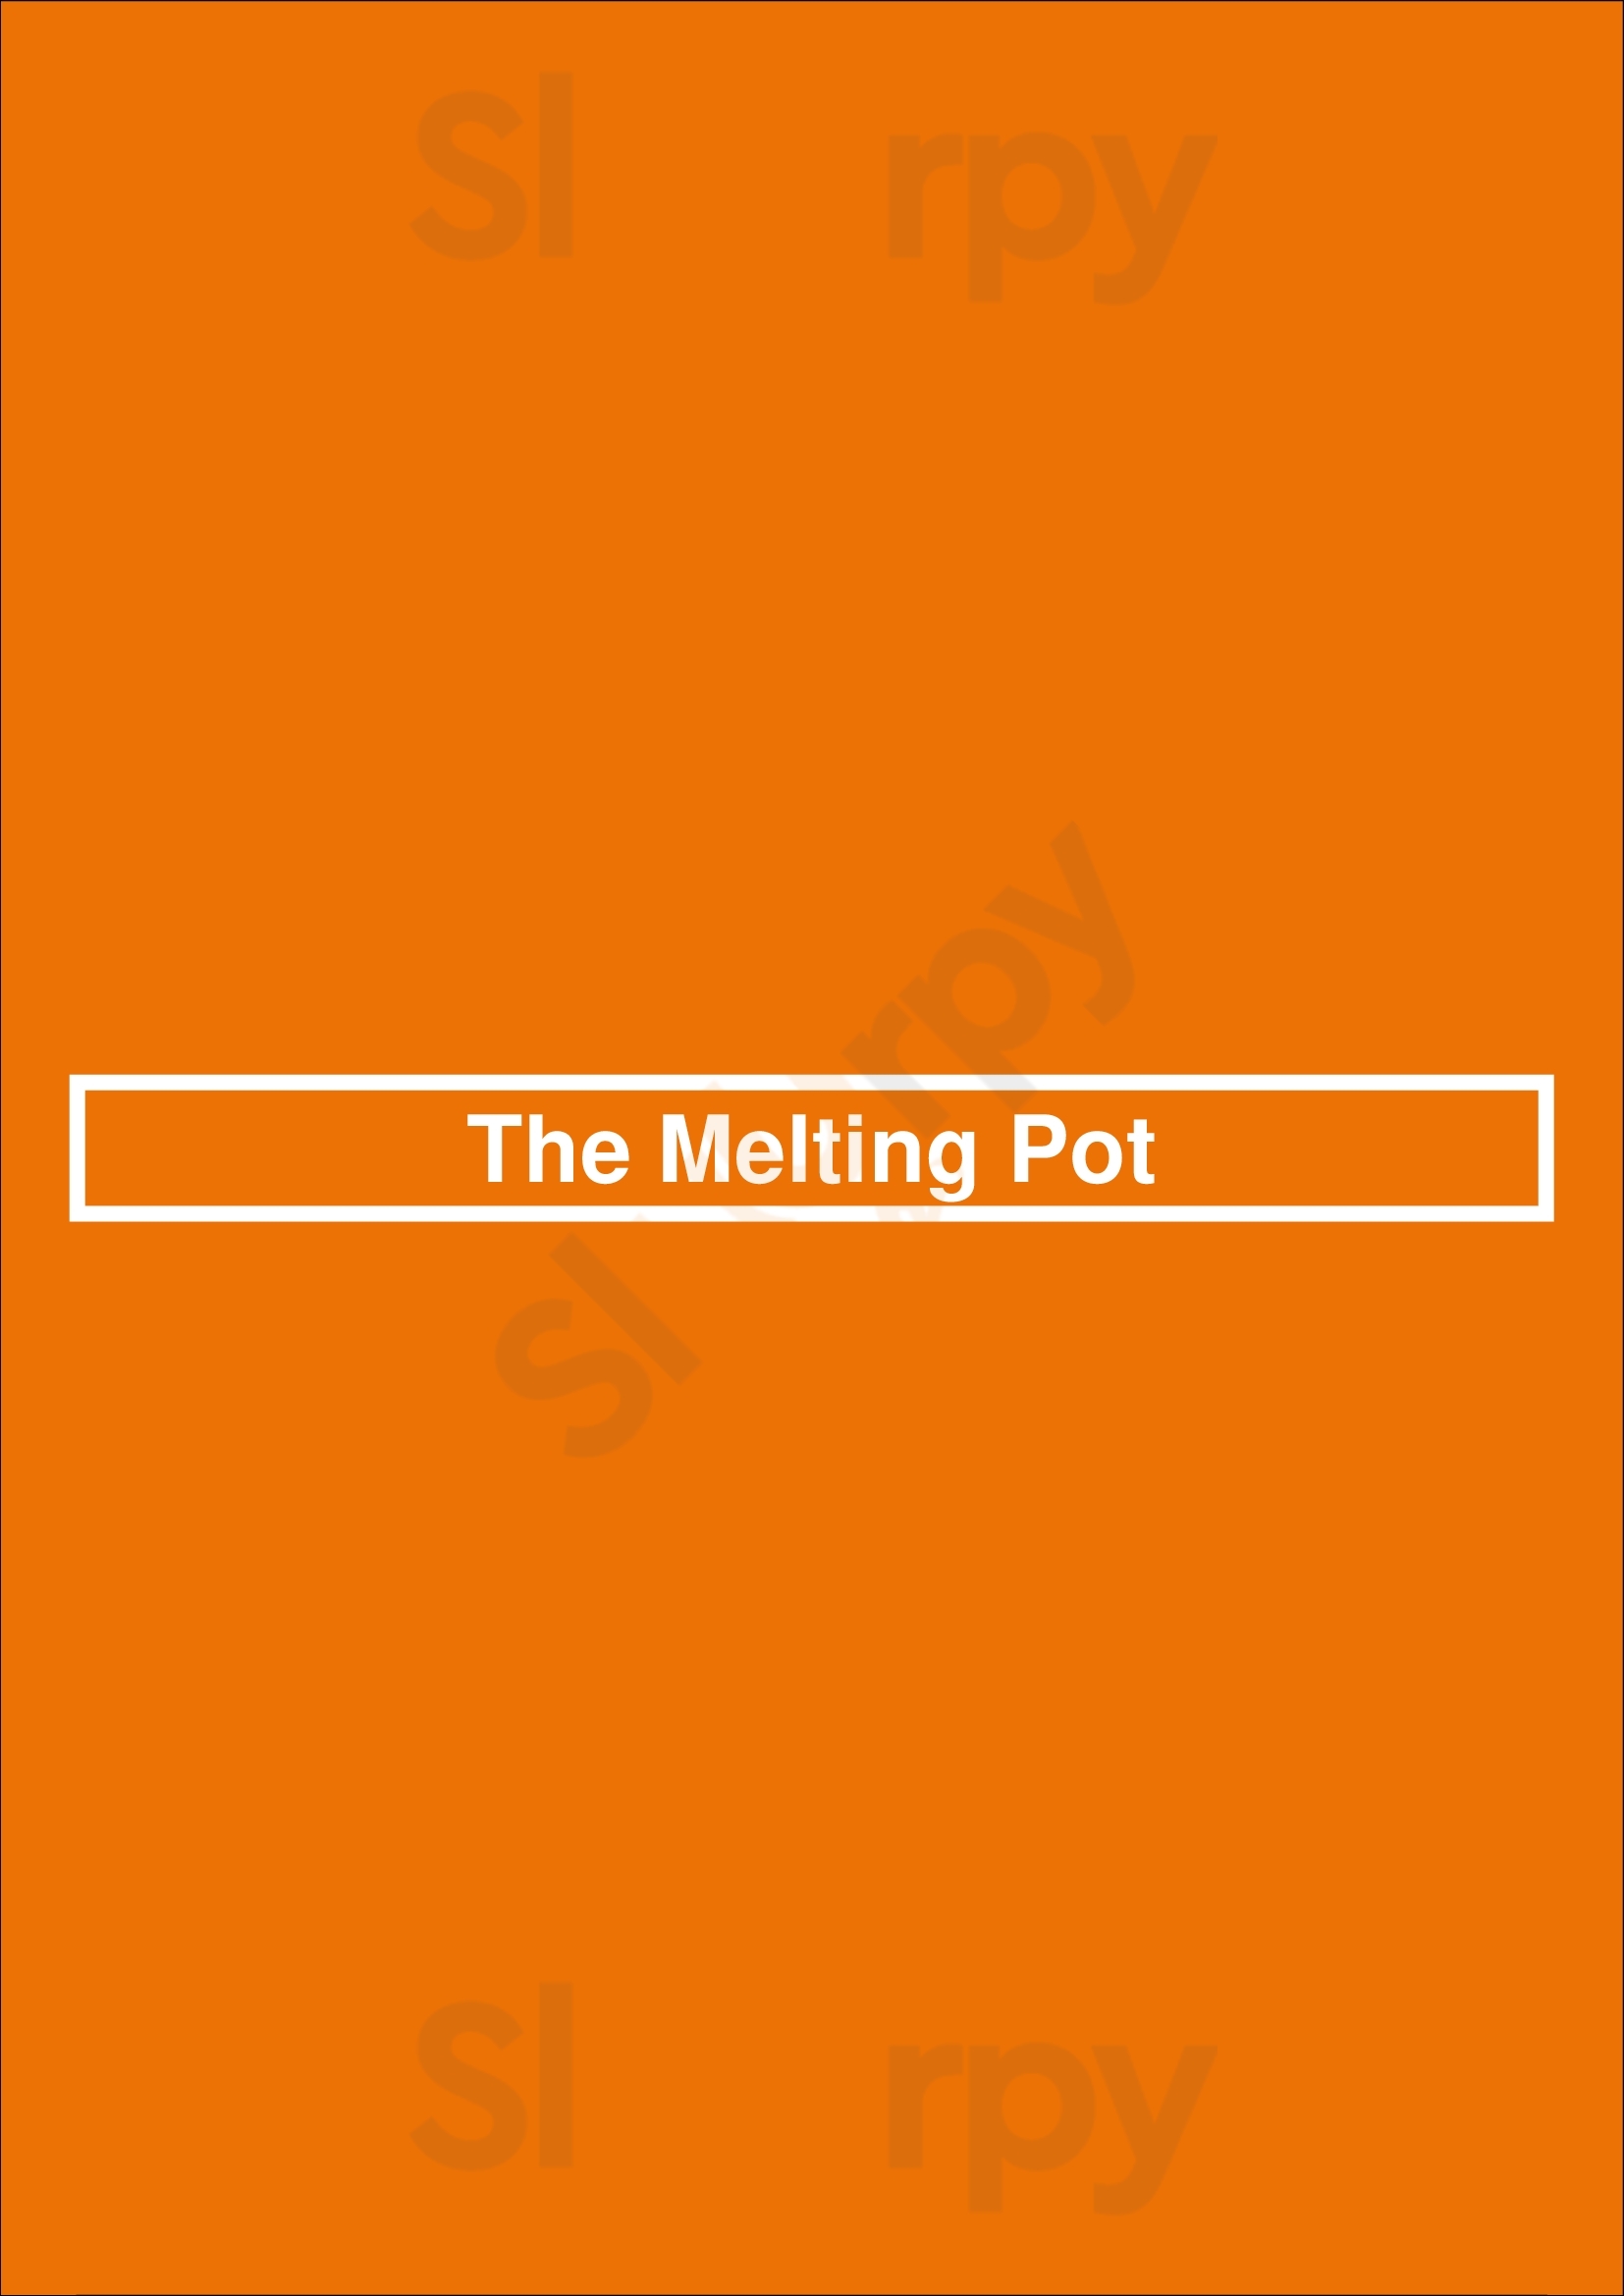 The Melting Pot Raleigh Menu - 1